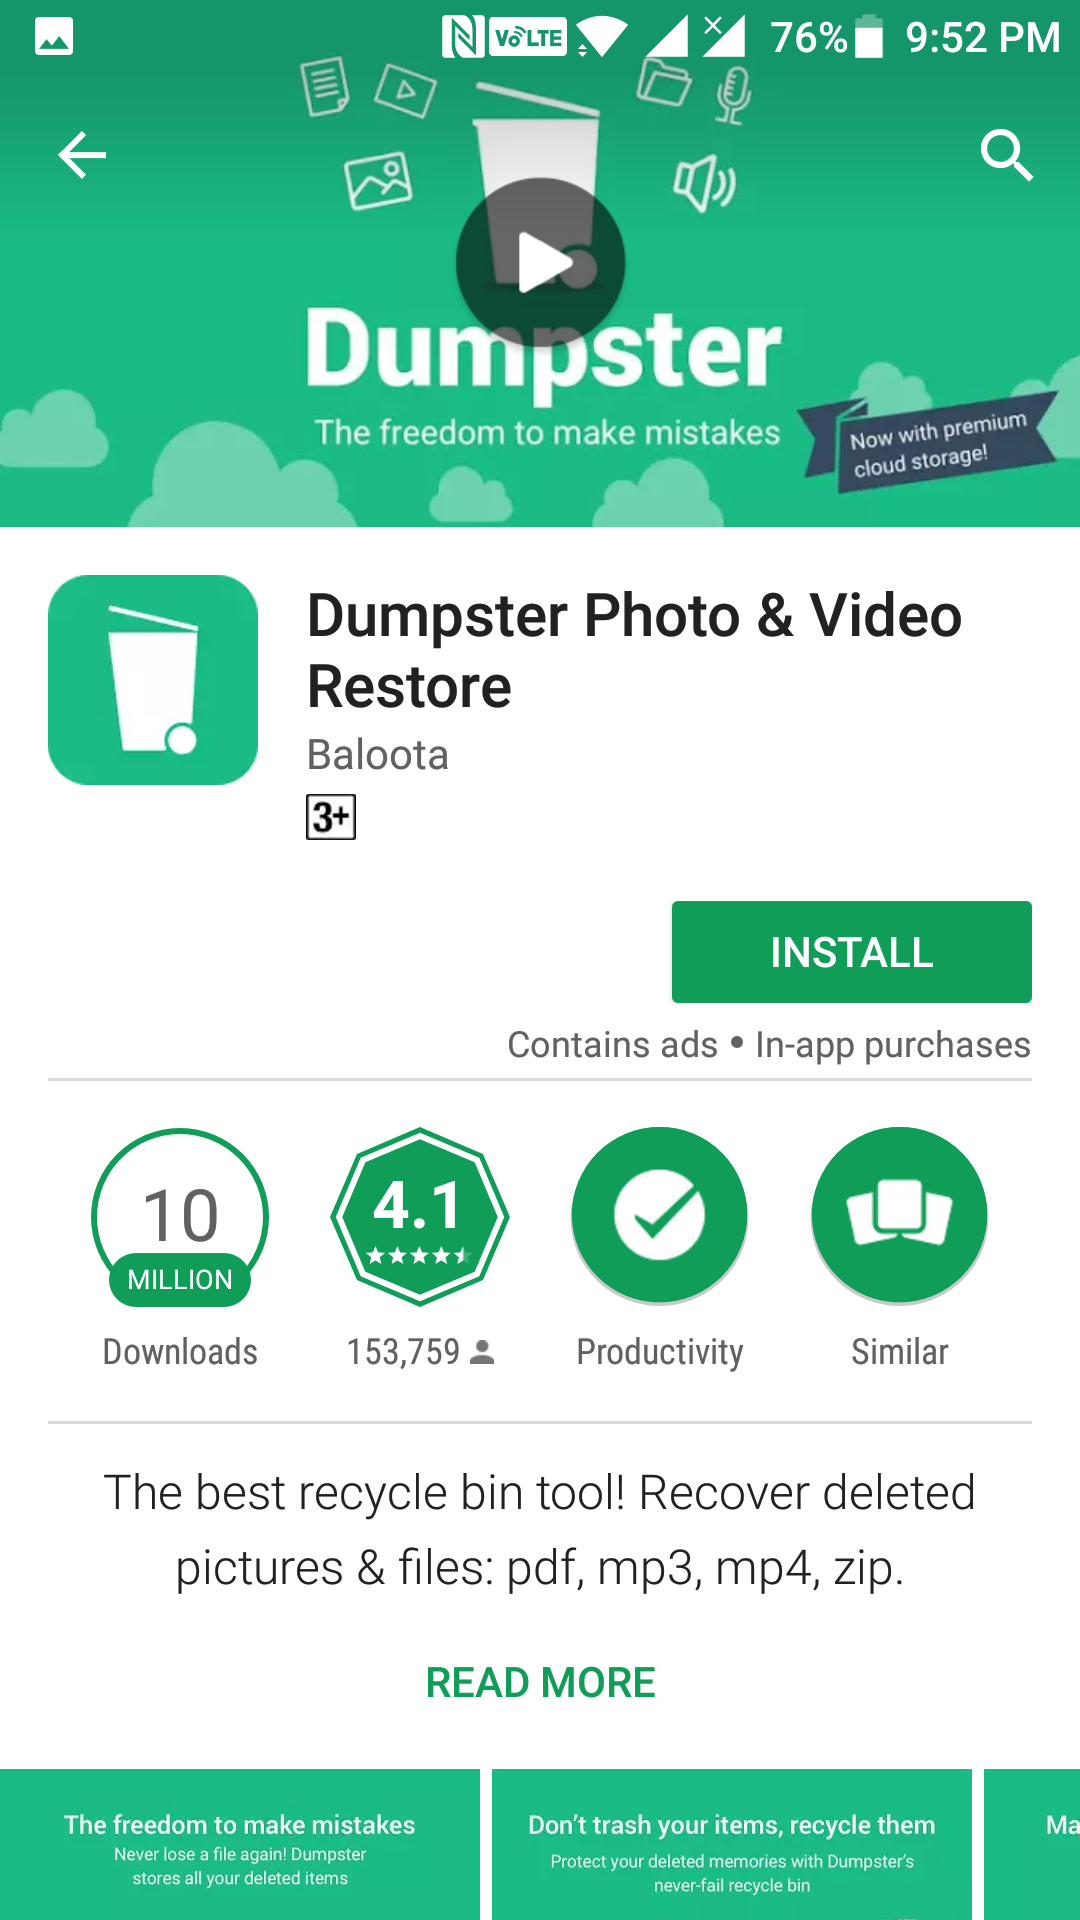 dumpster-install